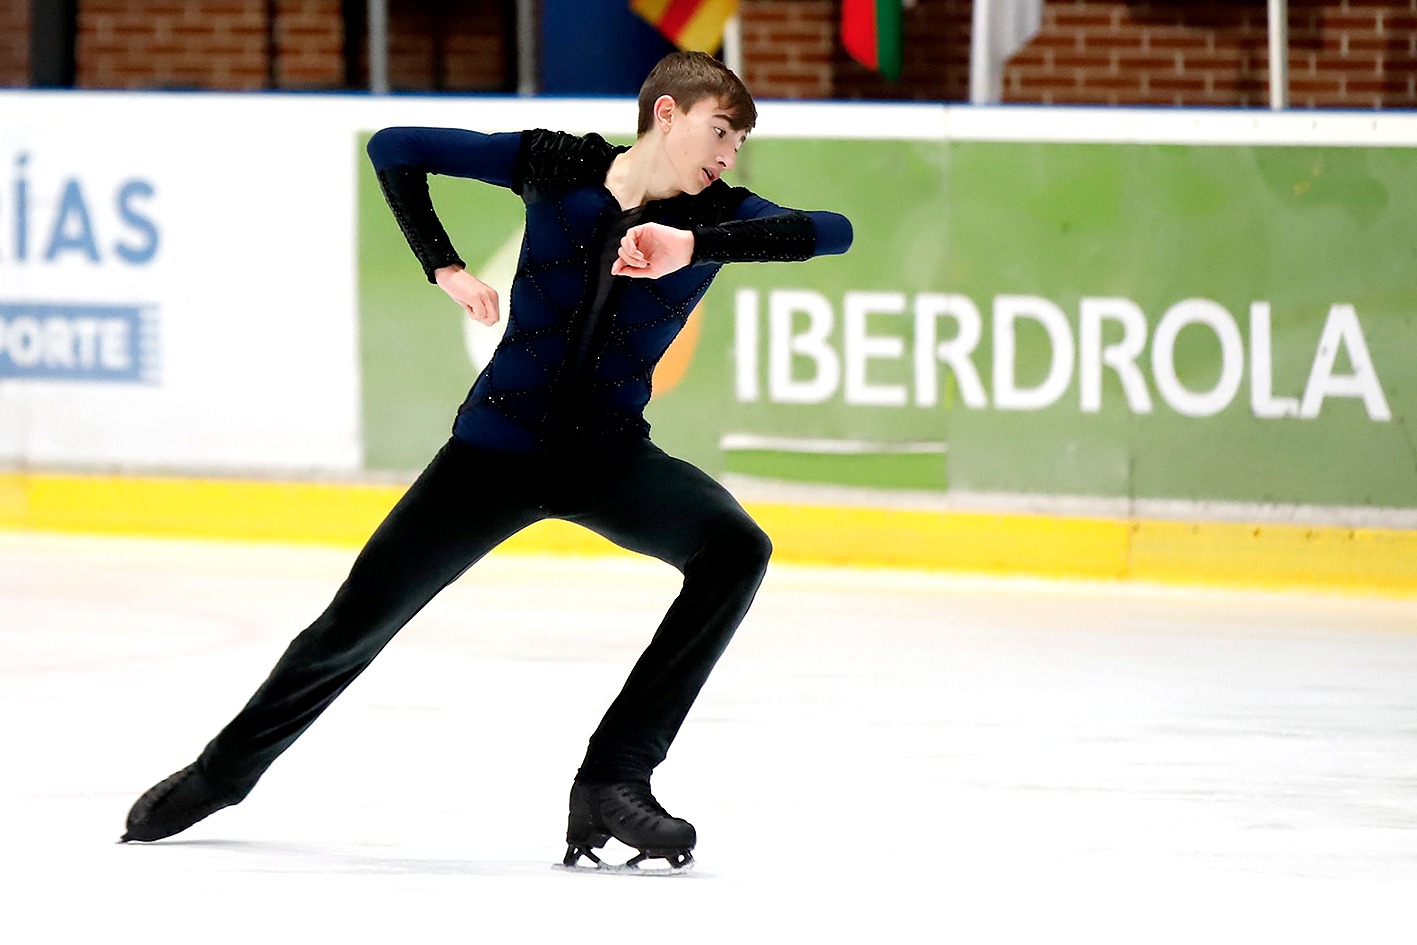 Categoría «Grand prix de patinaje artístico sobre hielo» de fotos